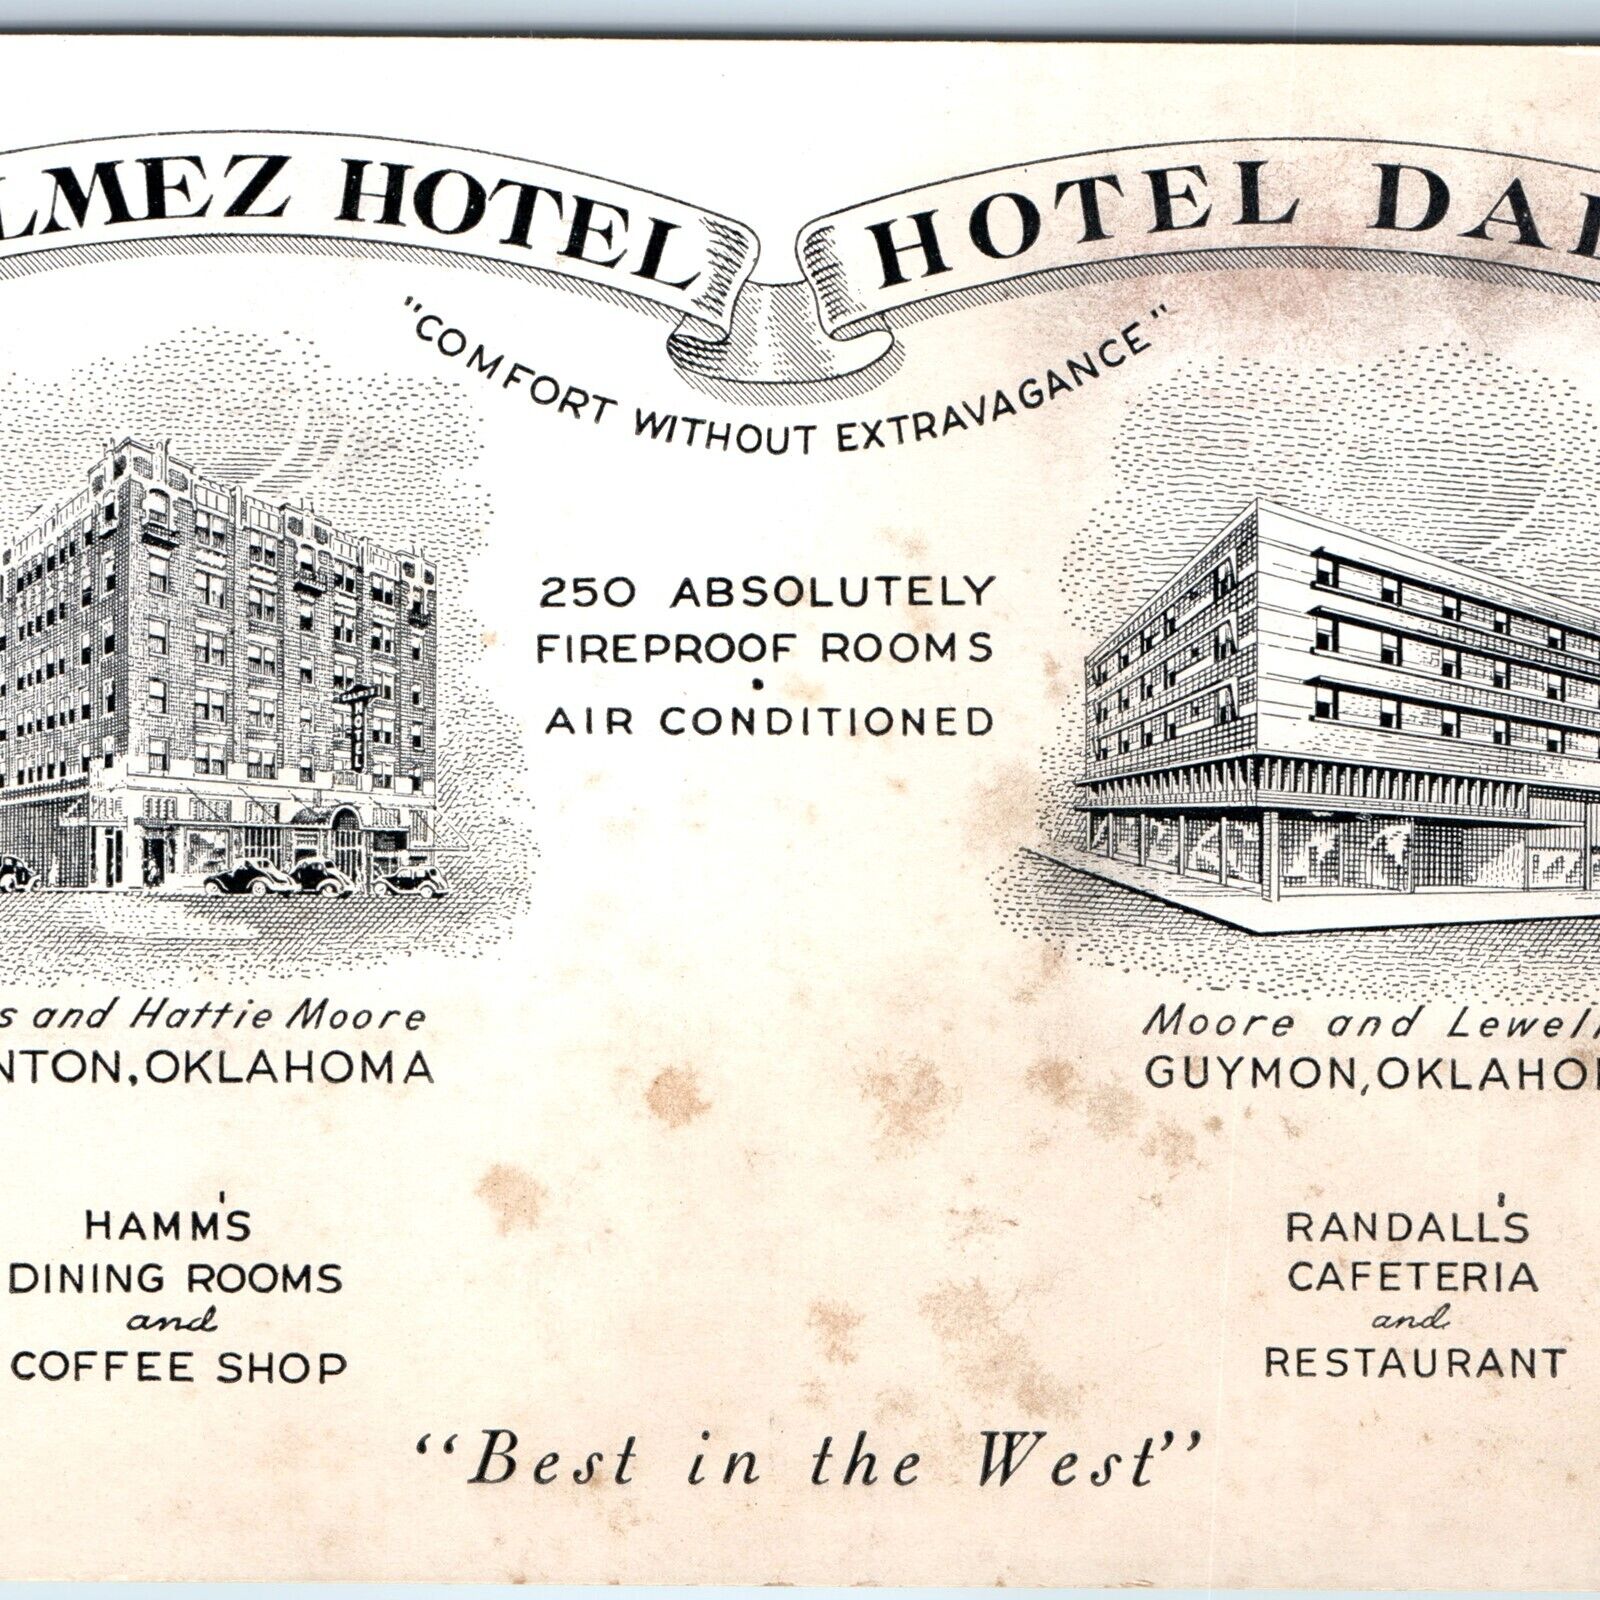 c1940s Clinton / Guymon, Okla Calmez Hotel Hotel Dale Advertising Postcard A242